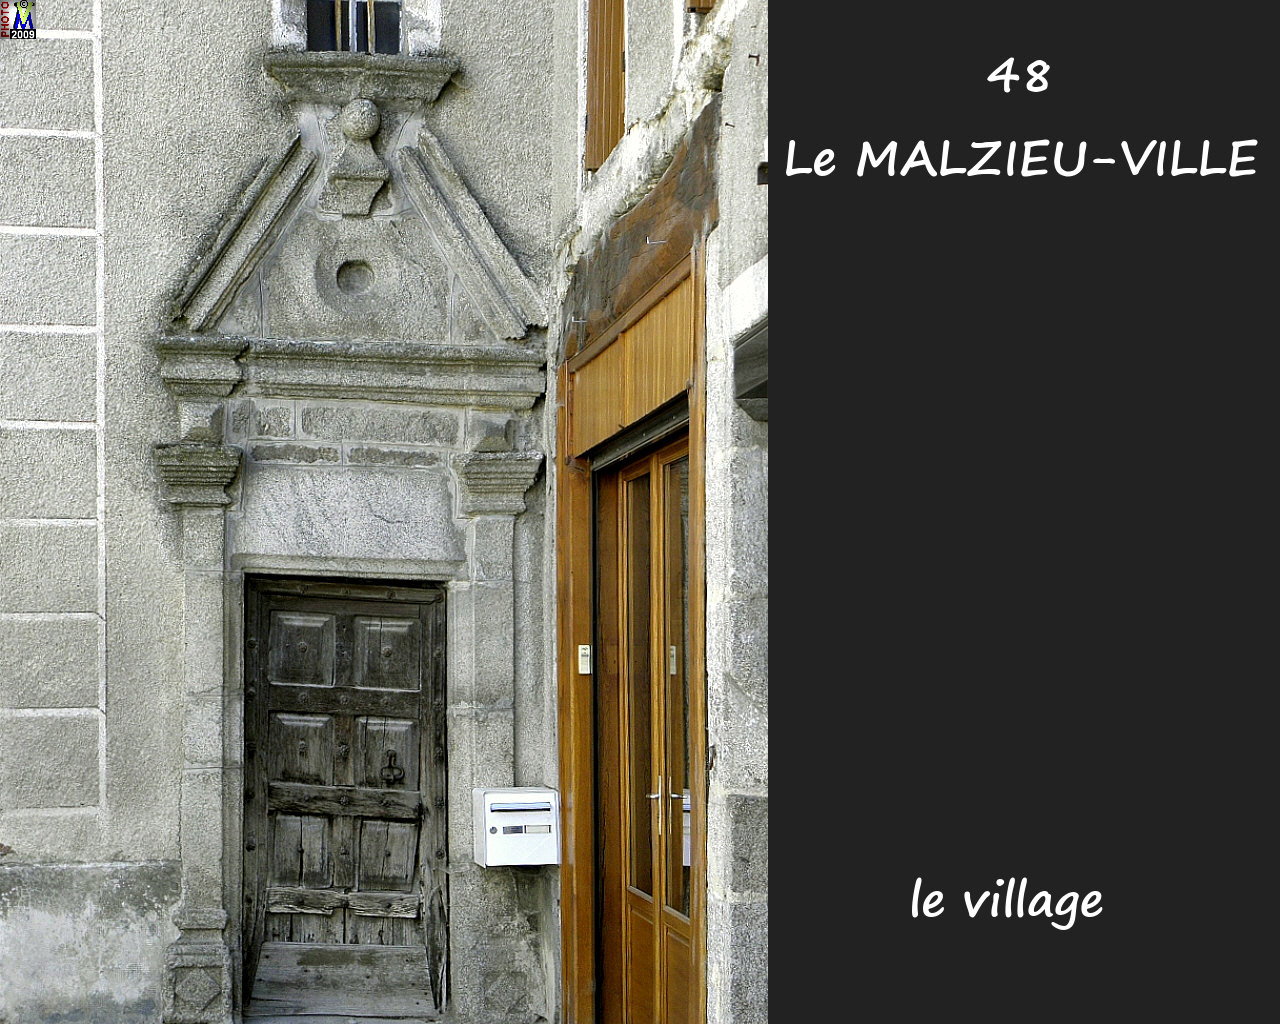 48MALZIEU-VILLE_village_214.jpg